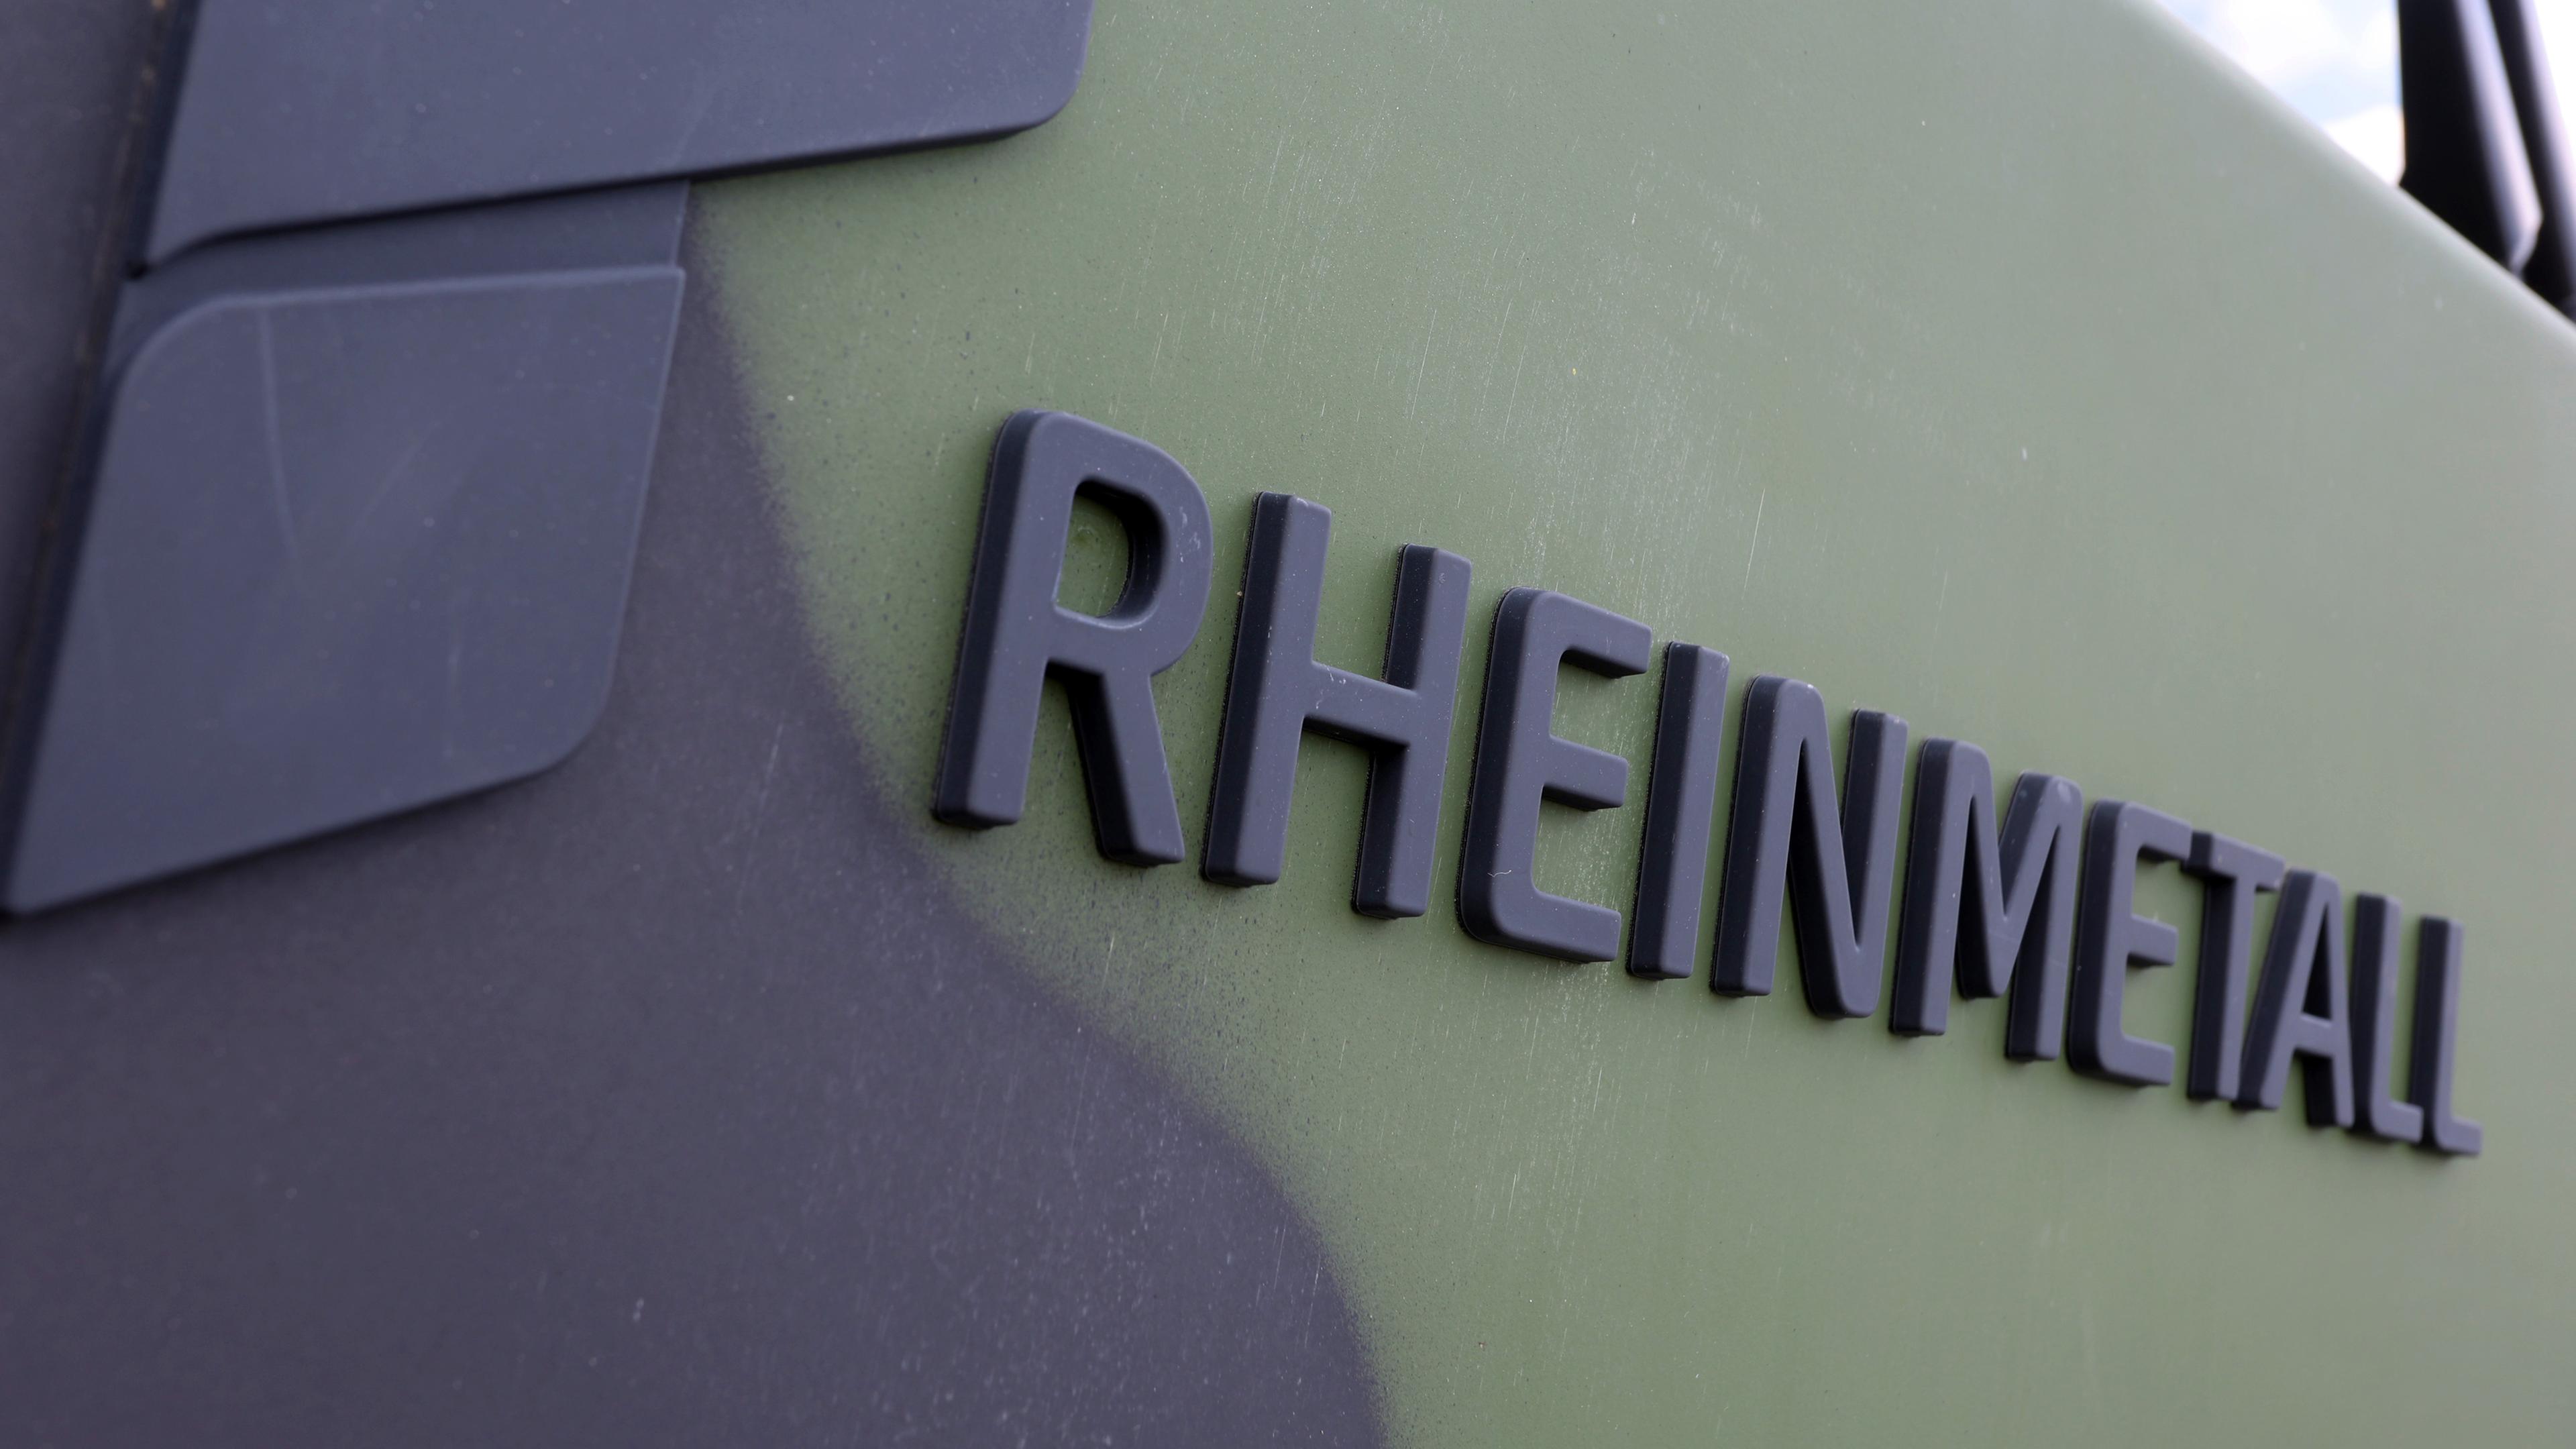 Bayern, Kaufbeuren: "Rheinmetall" ist an einer Richtfunkkabine des Flugabwehrraketensystems Patriot beim Tag der Bundeswehr auf dem Fliegerhorst zu lesen. 